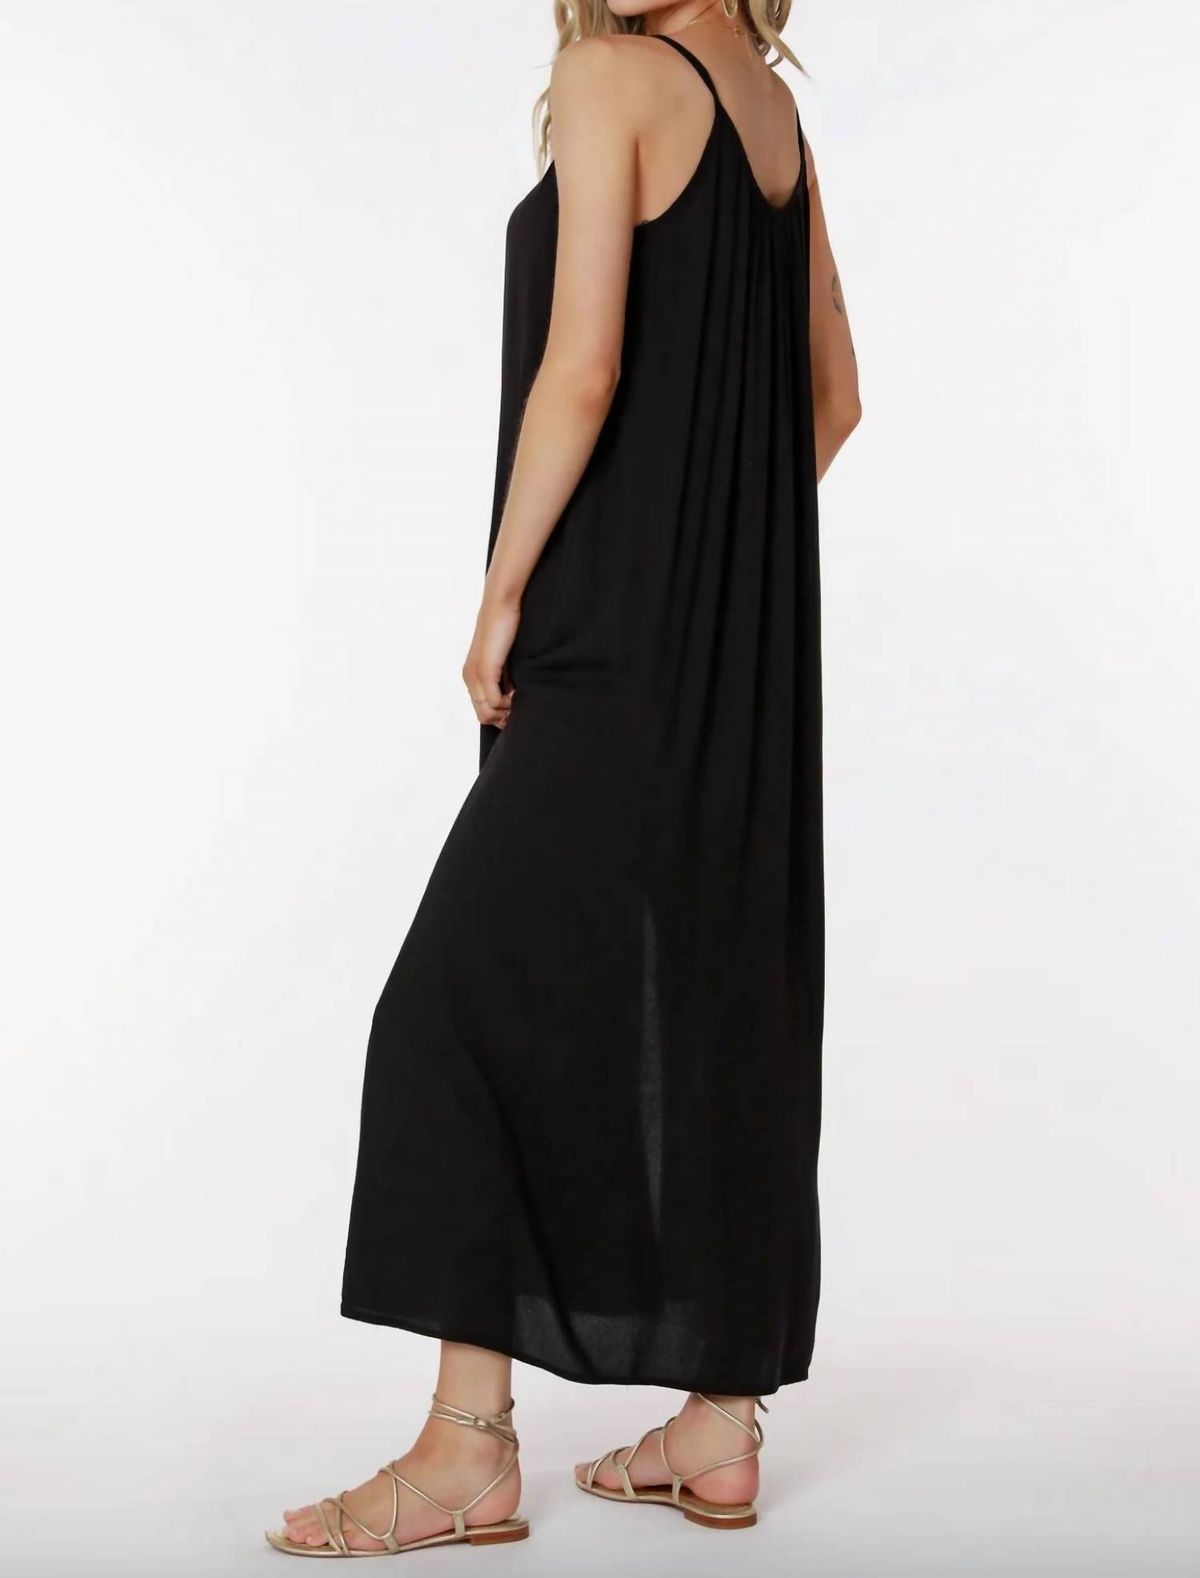 Style 1-2194106376-3011 bobi Size M Black Side Slit Dress on Queenly